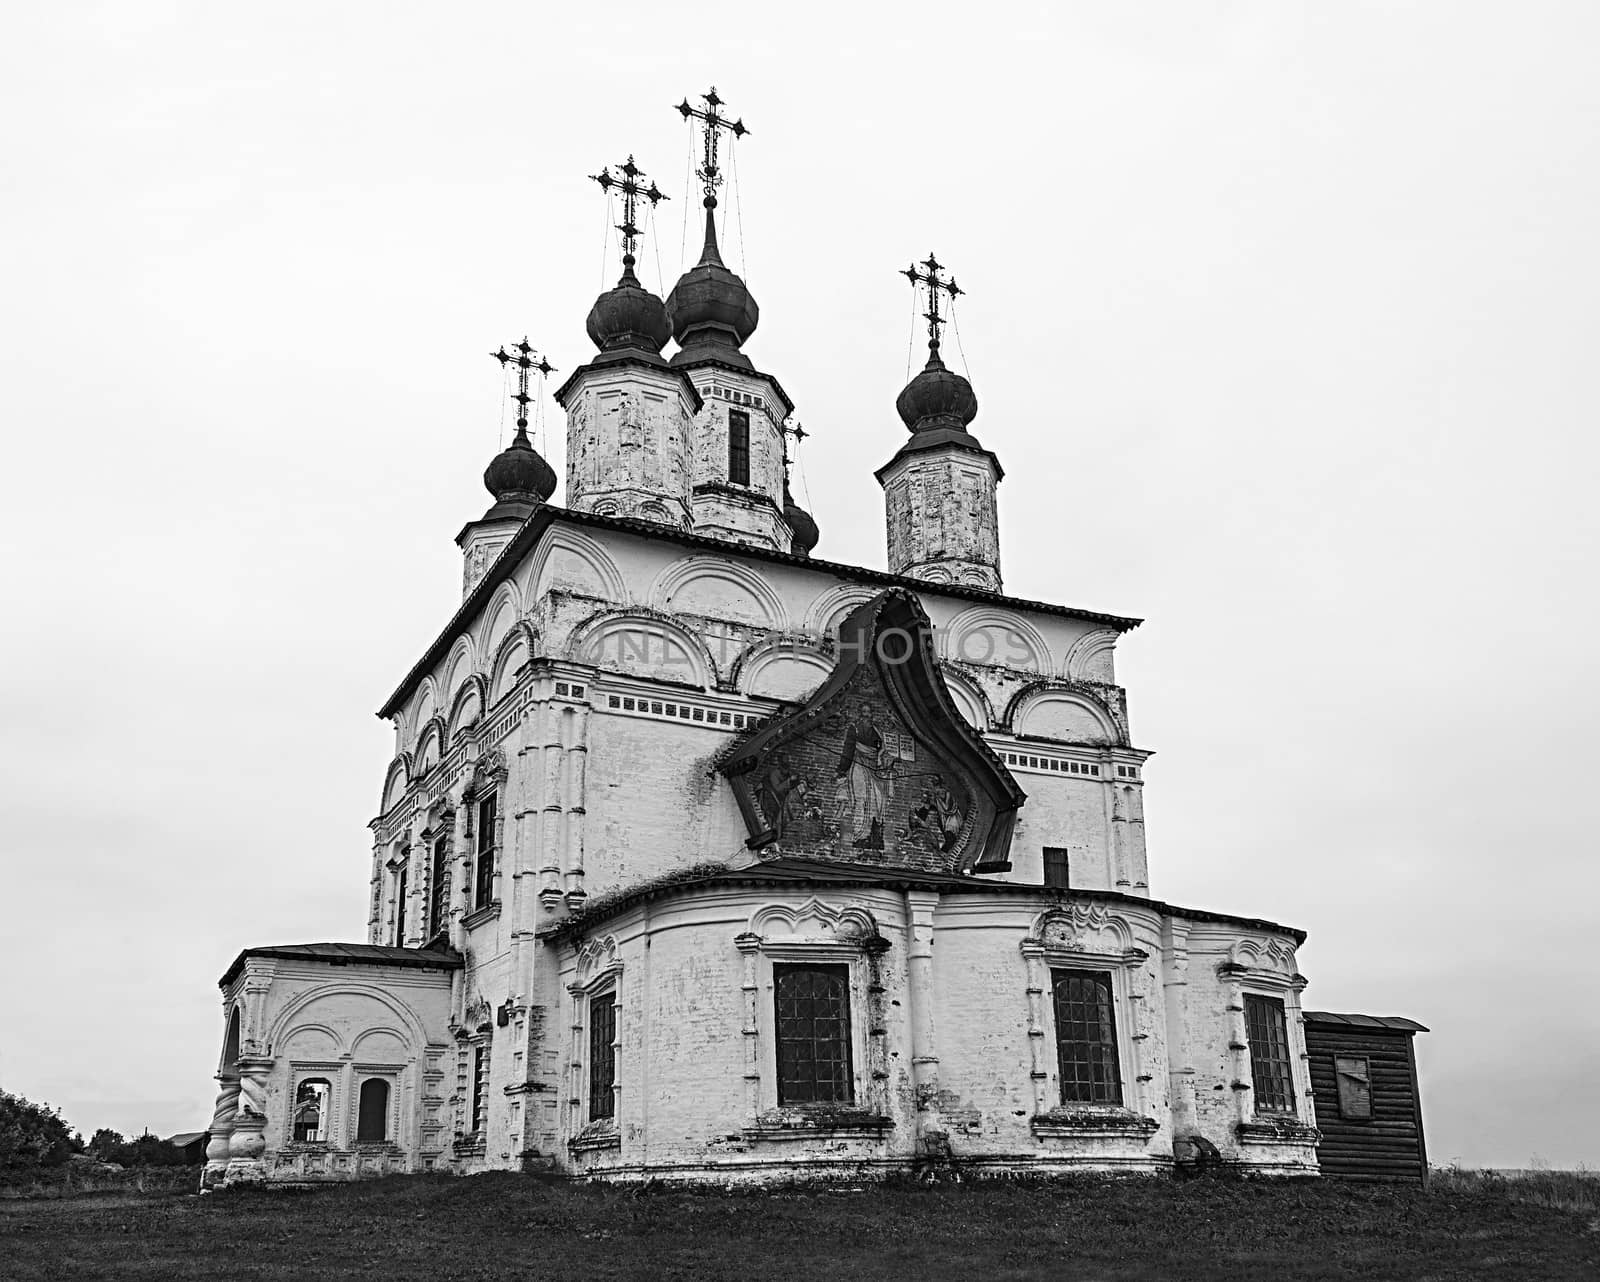 B&W Demetrios Church in Dymkovo Sloboda, Great Ustyug, North Russia. Built in 1700-1708.